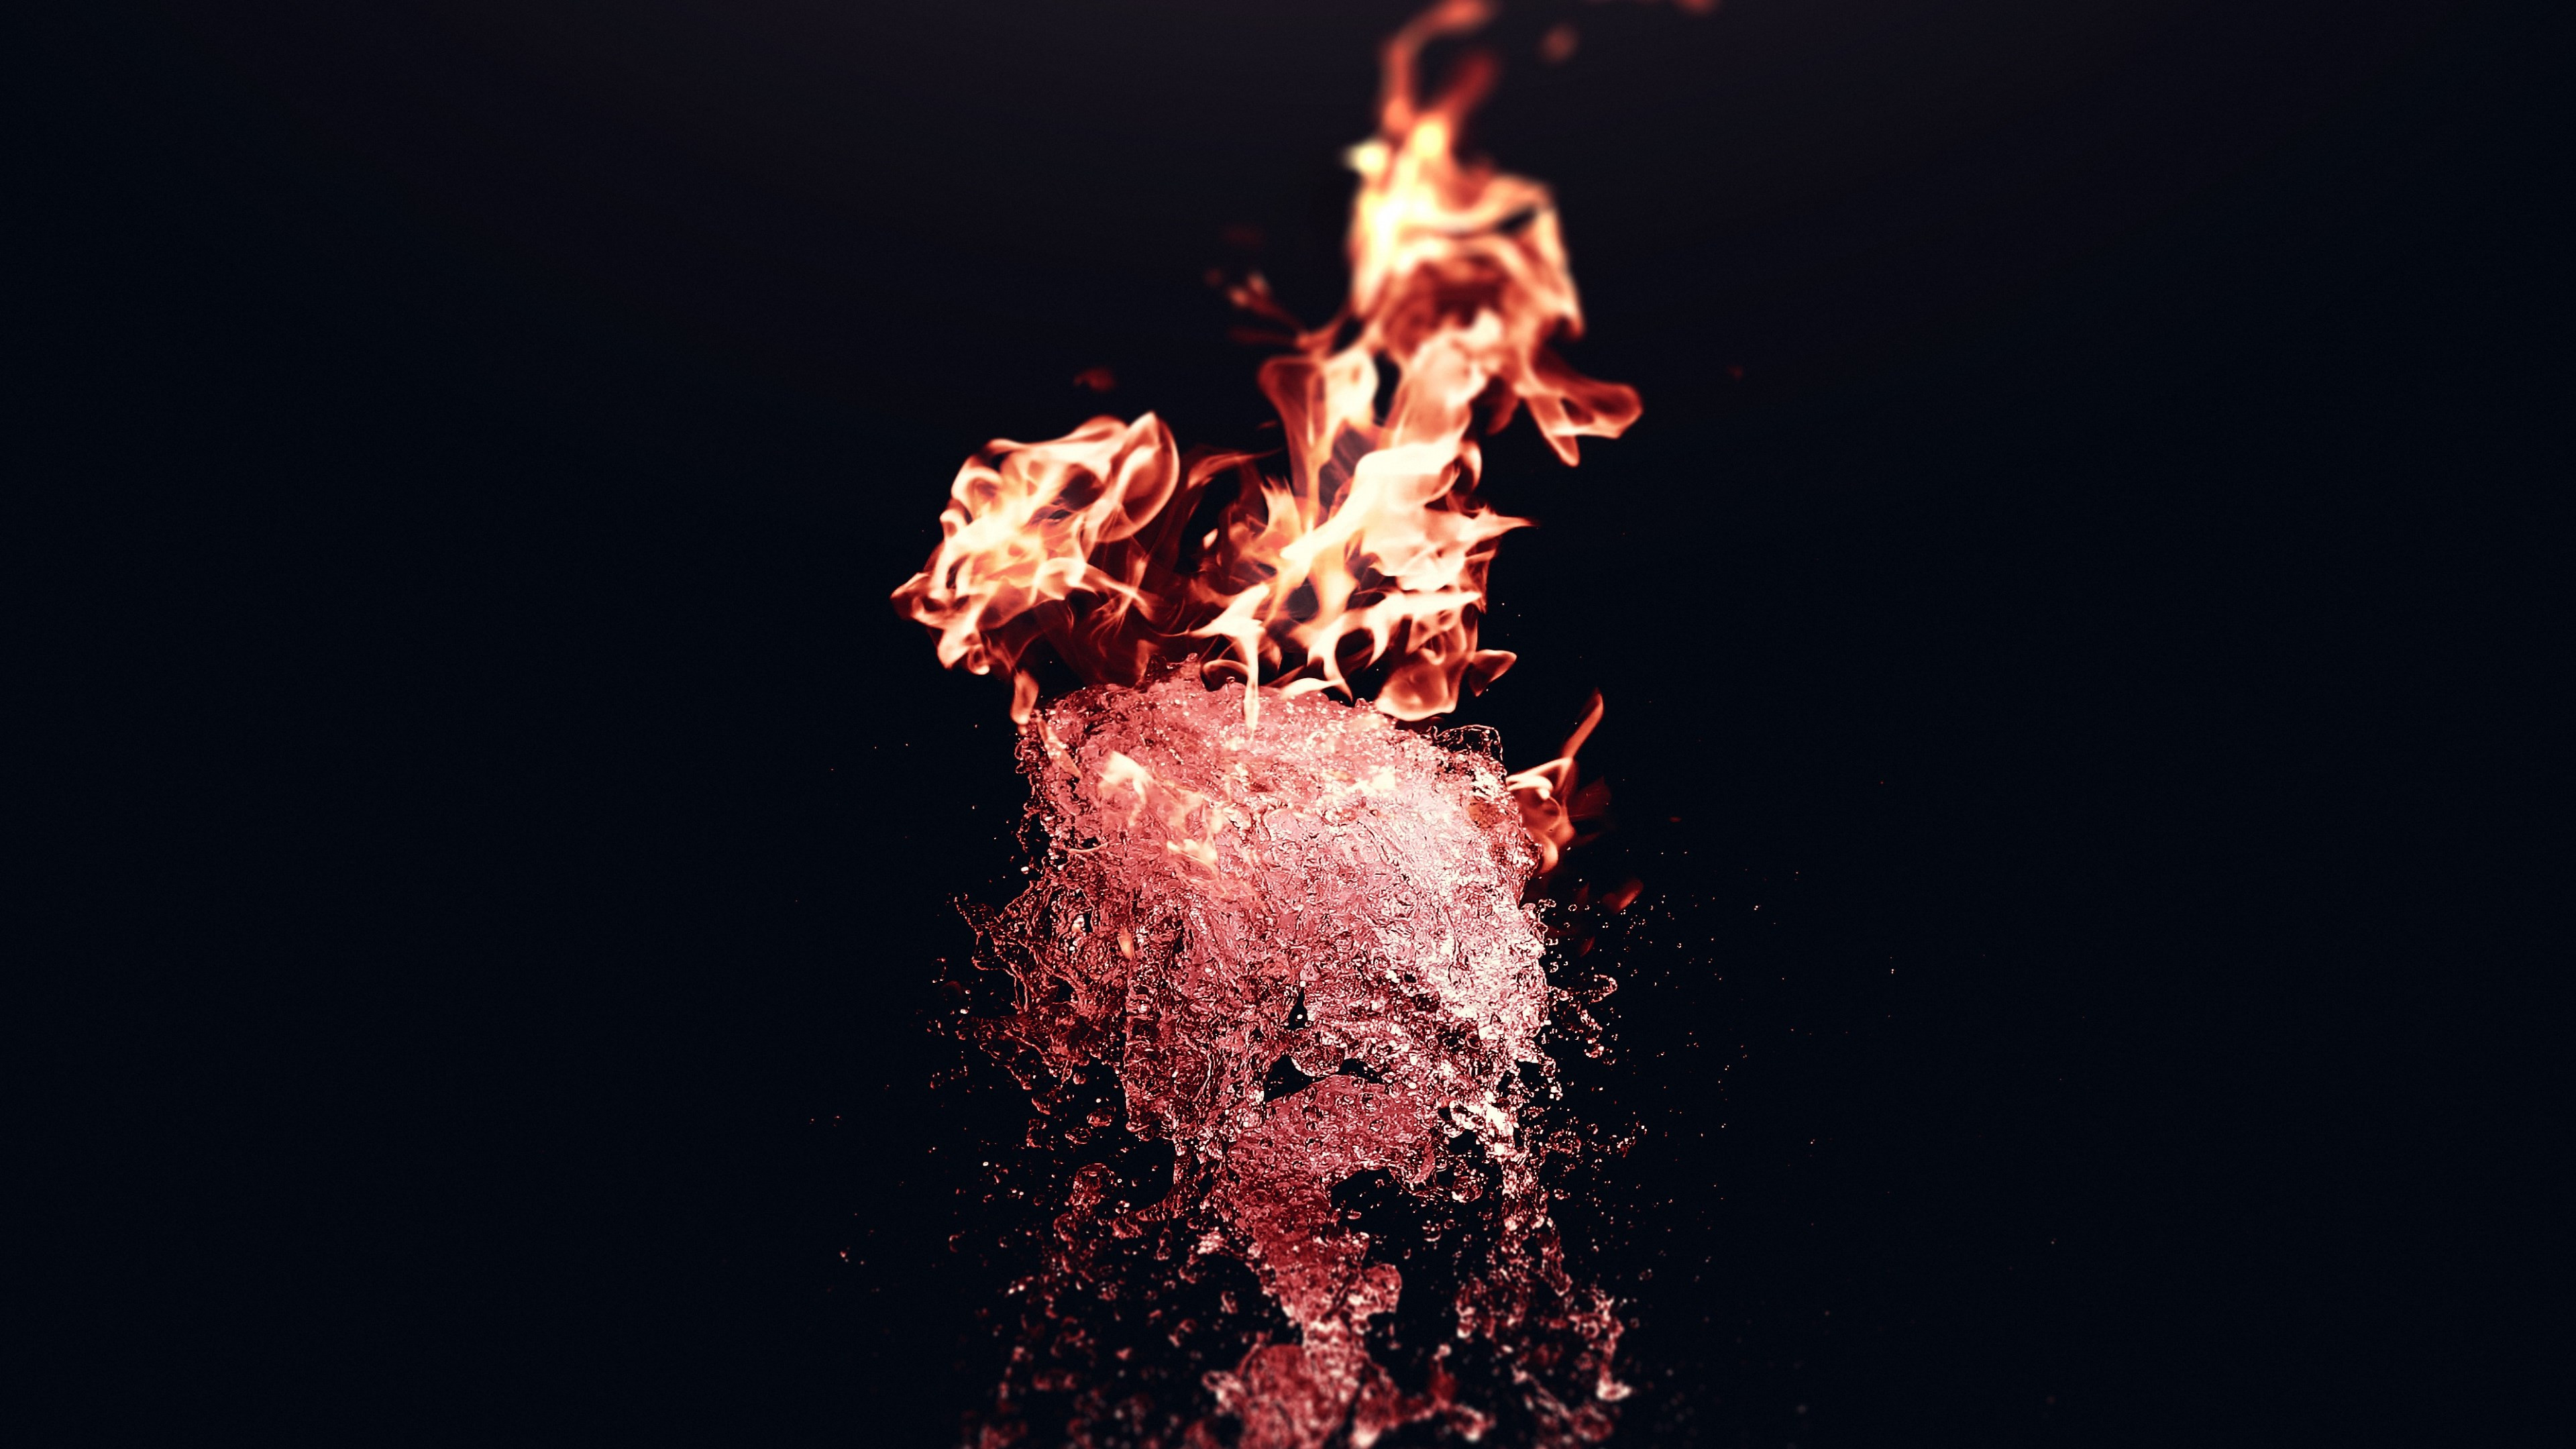 Fire vs Water wallpaper 3840x2160